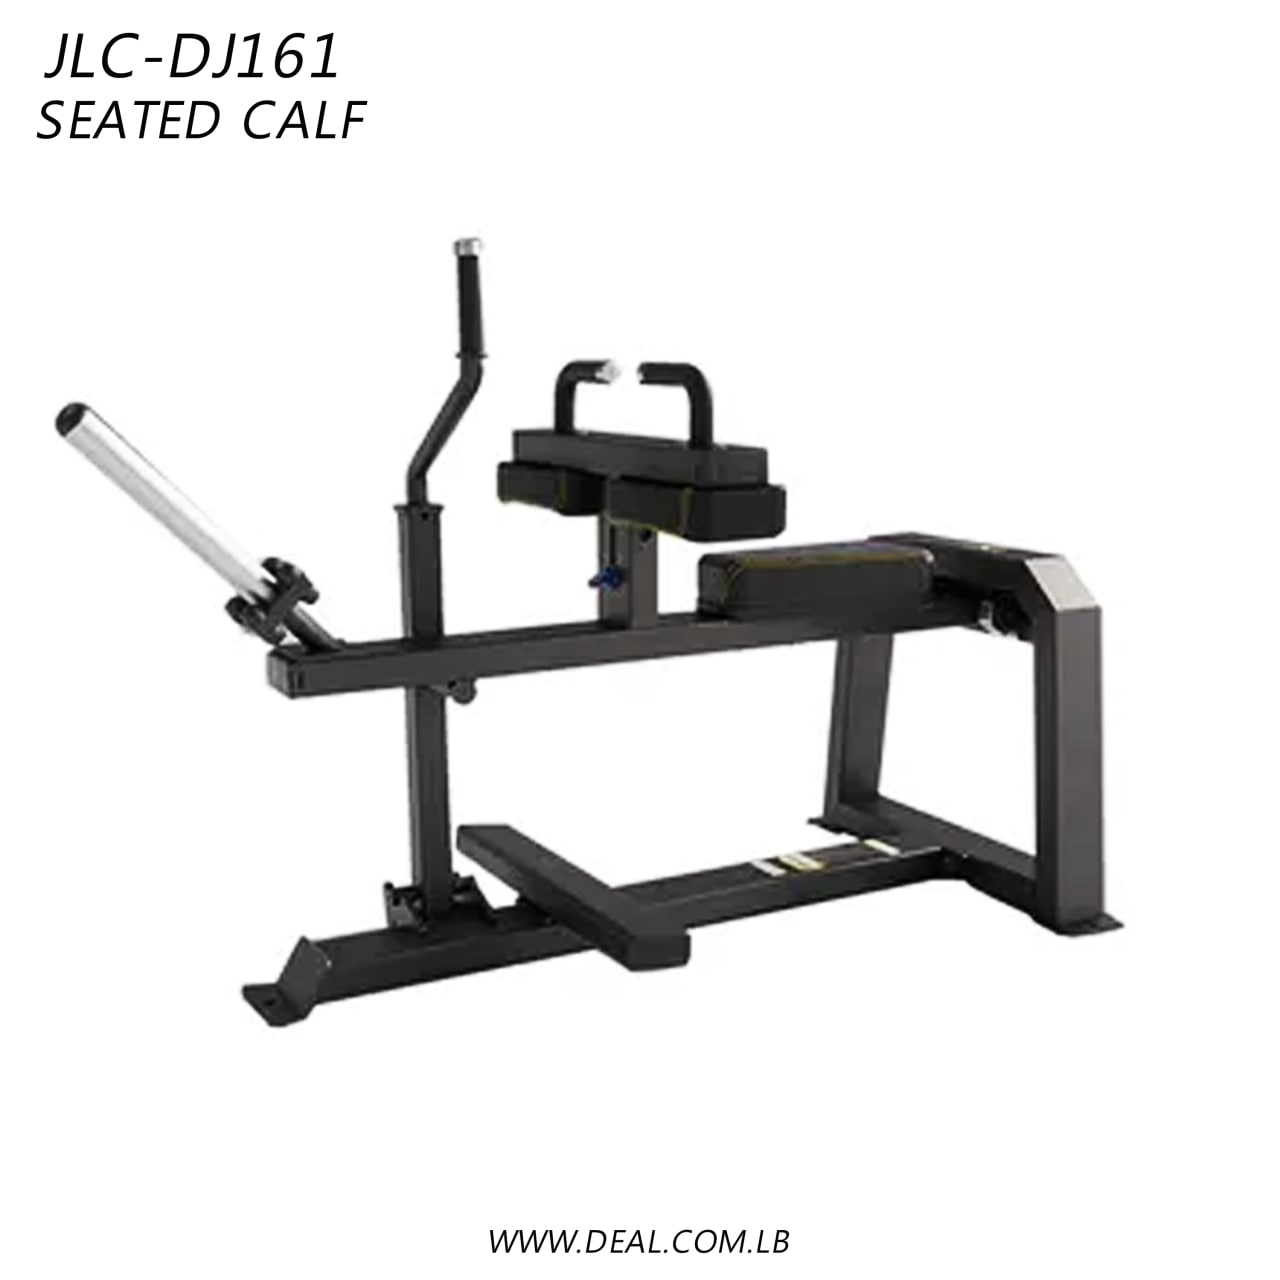 JLC-DJ161 | Seated Calf